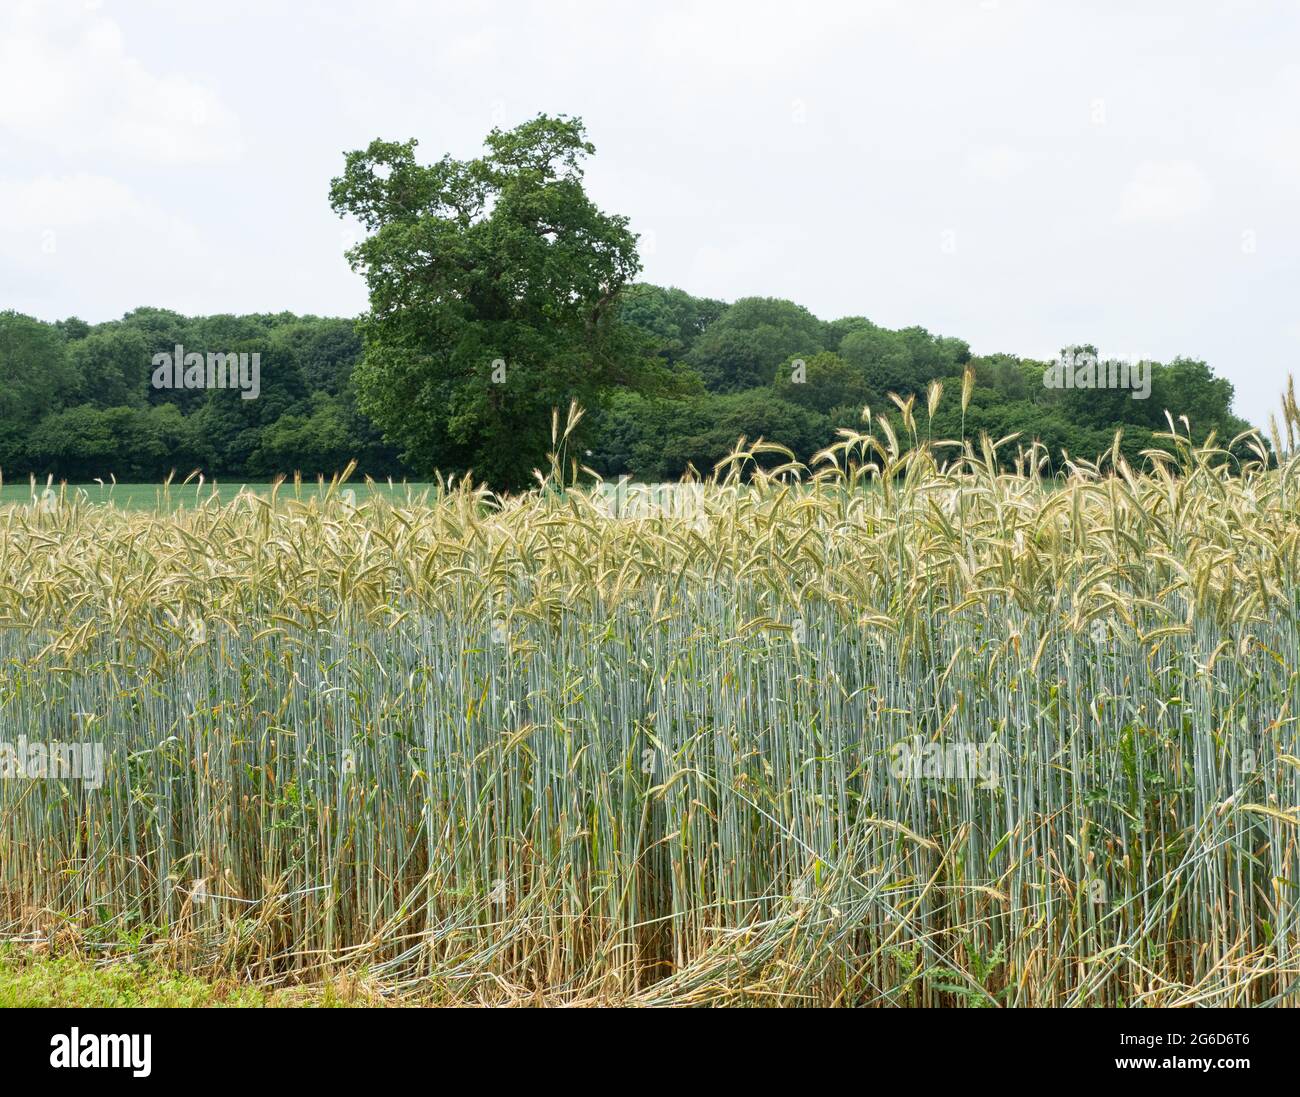 Biomasa cultivable de cereales de centeno Foto de stock